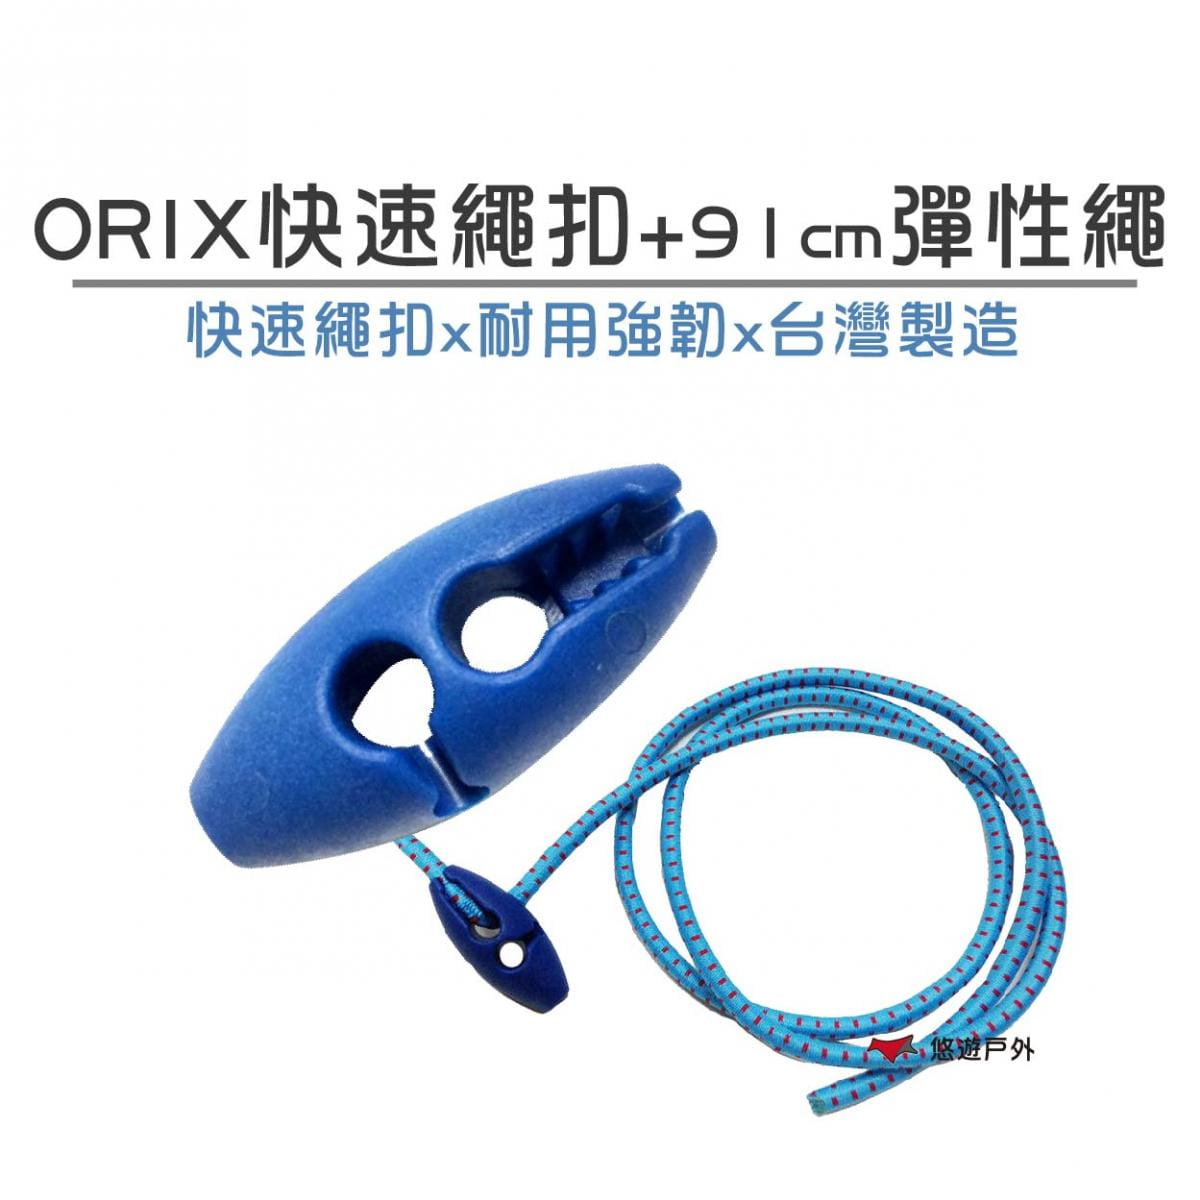 【ORIX】 快速繩扣+91公分彈性繩 悠遊戶外 0